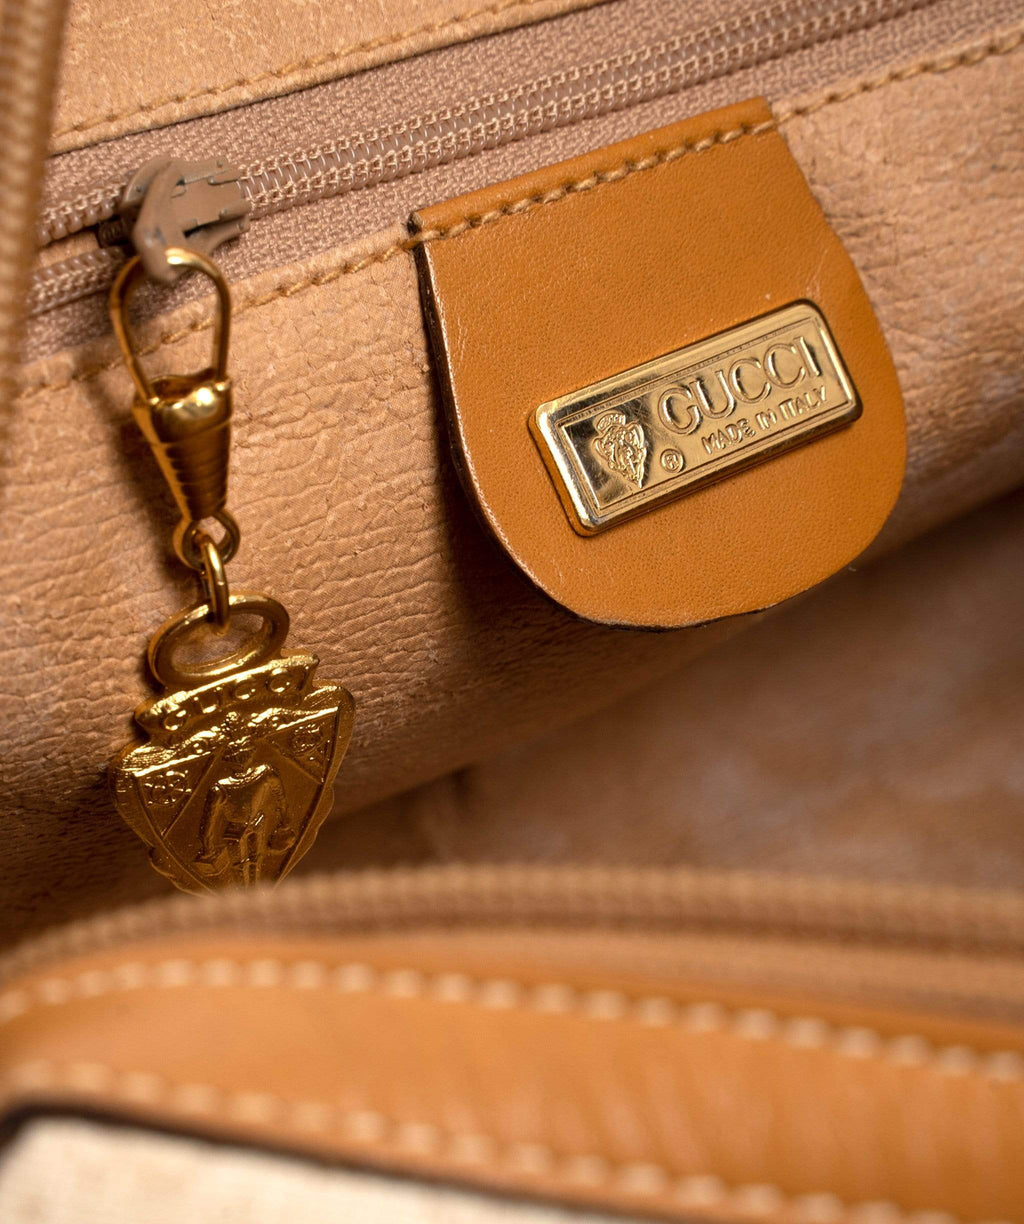 Vintage Gucci Monogram Mini Boston Handbag